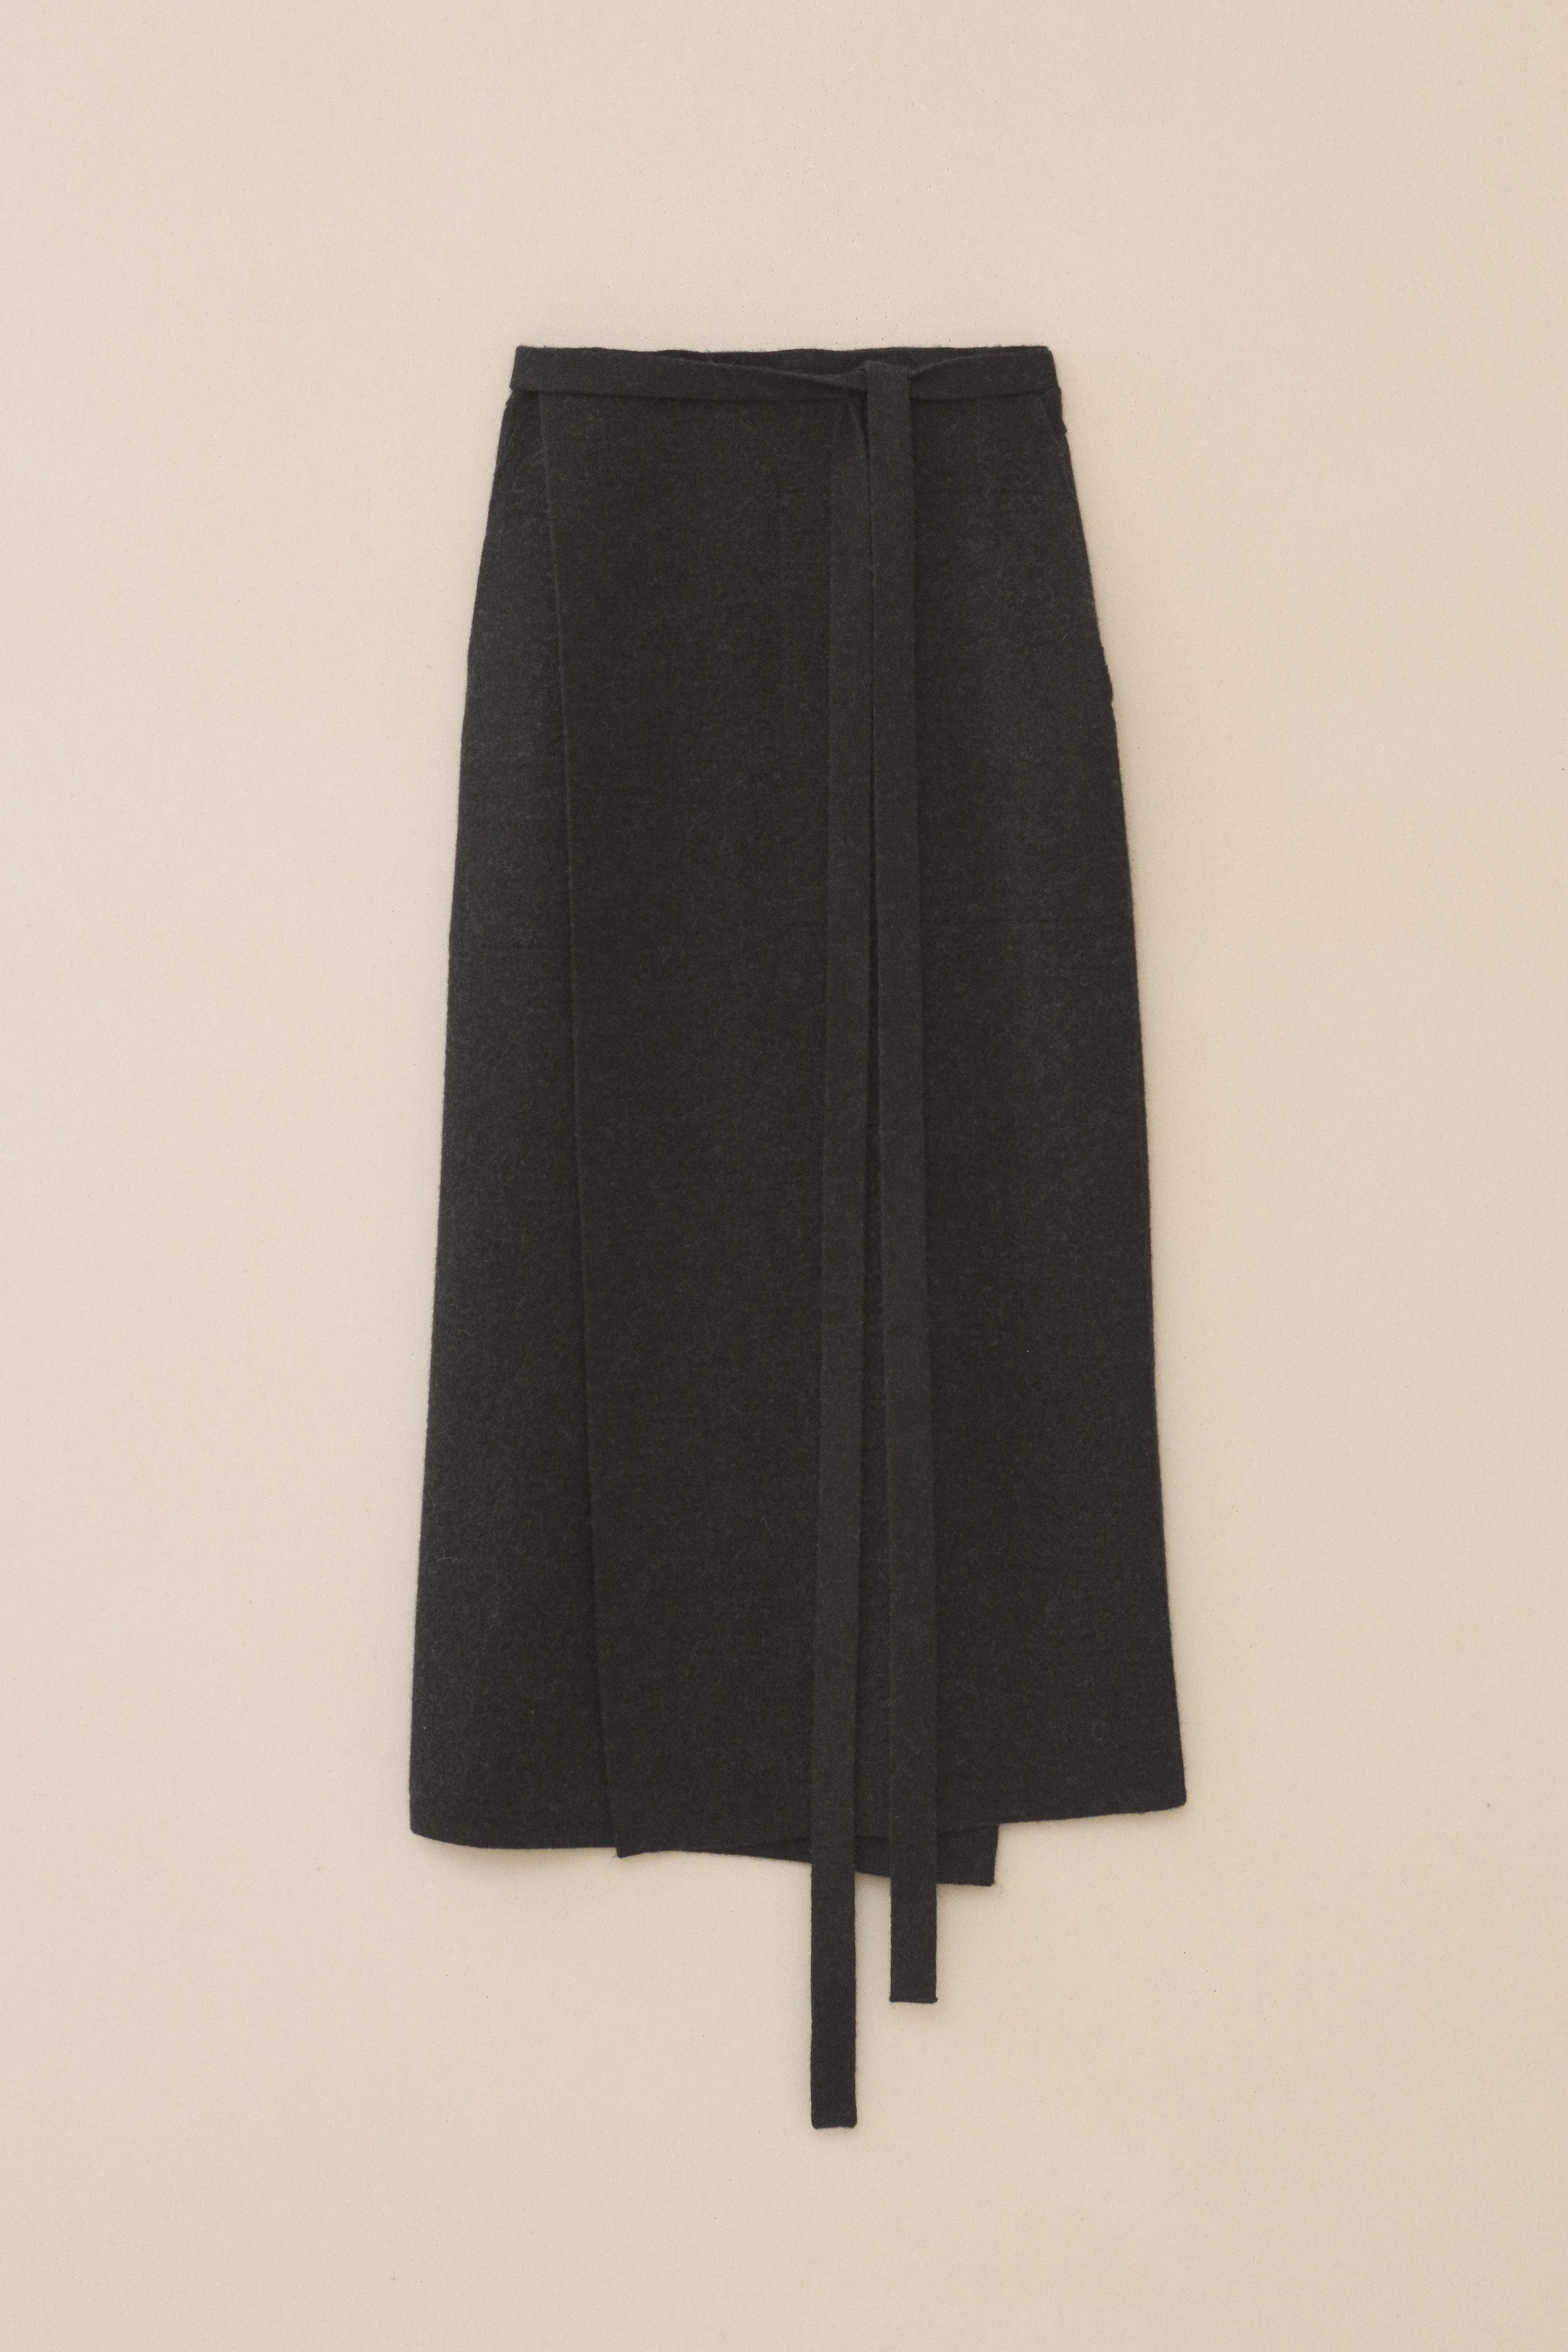 Lauren Manoogian Rib Pocket Skirt - ShopperBoard